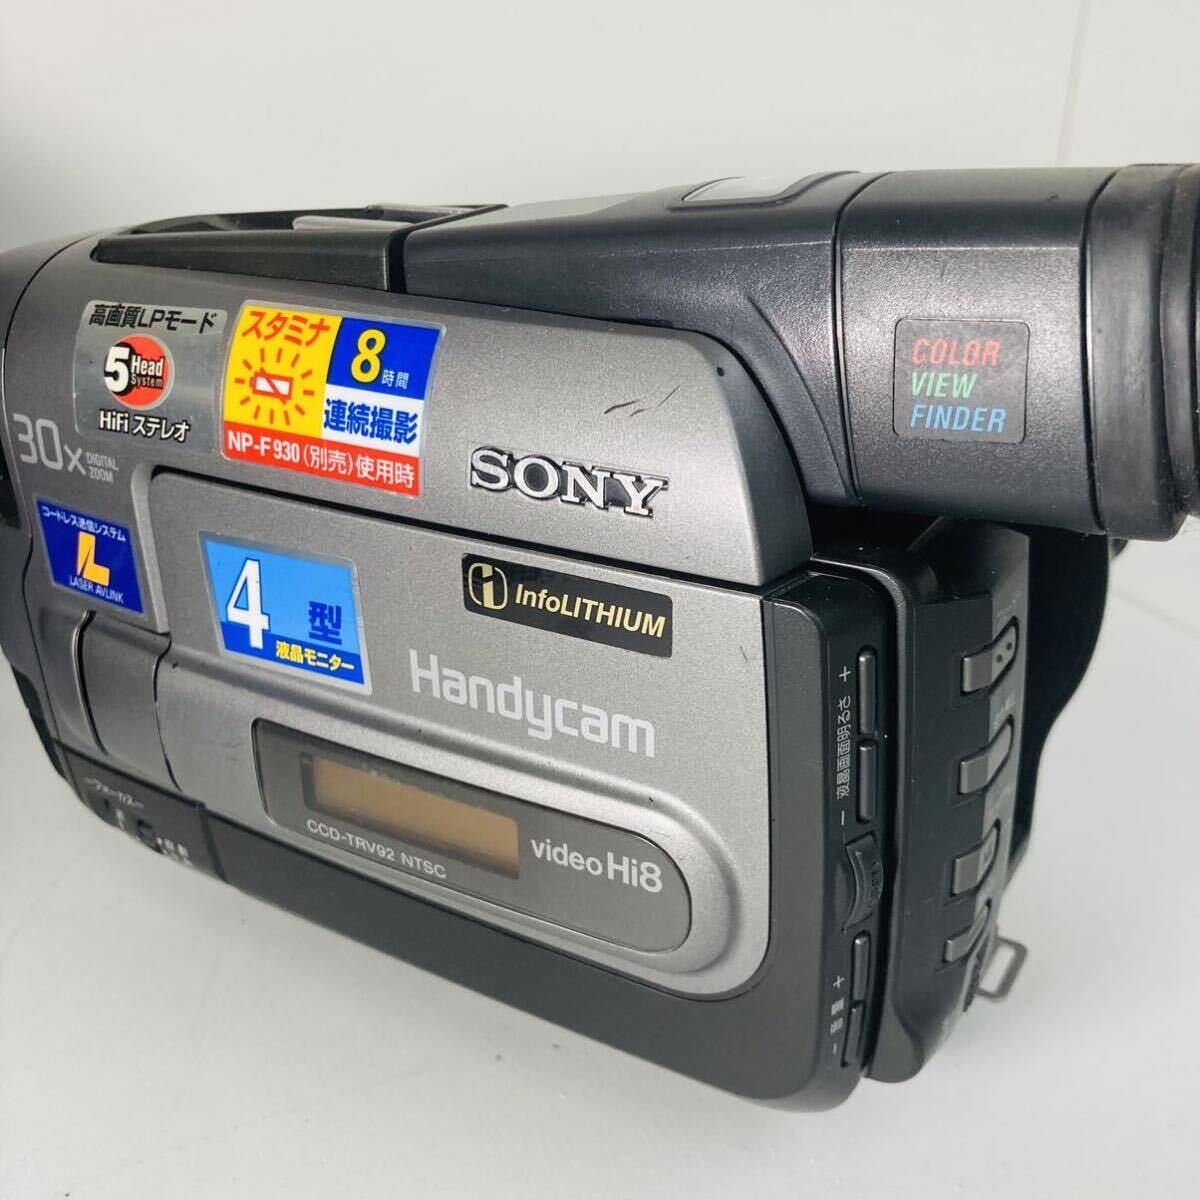 【ジャンク】SONY ソニー Handycam CCD-TRV92 NTSC デジタルビデオカメラ ハンディカムの画像8